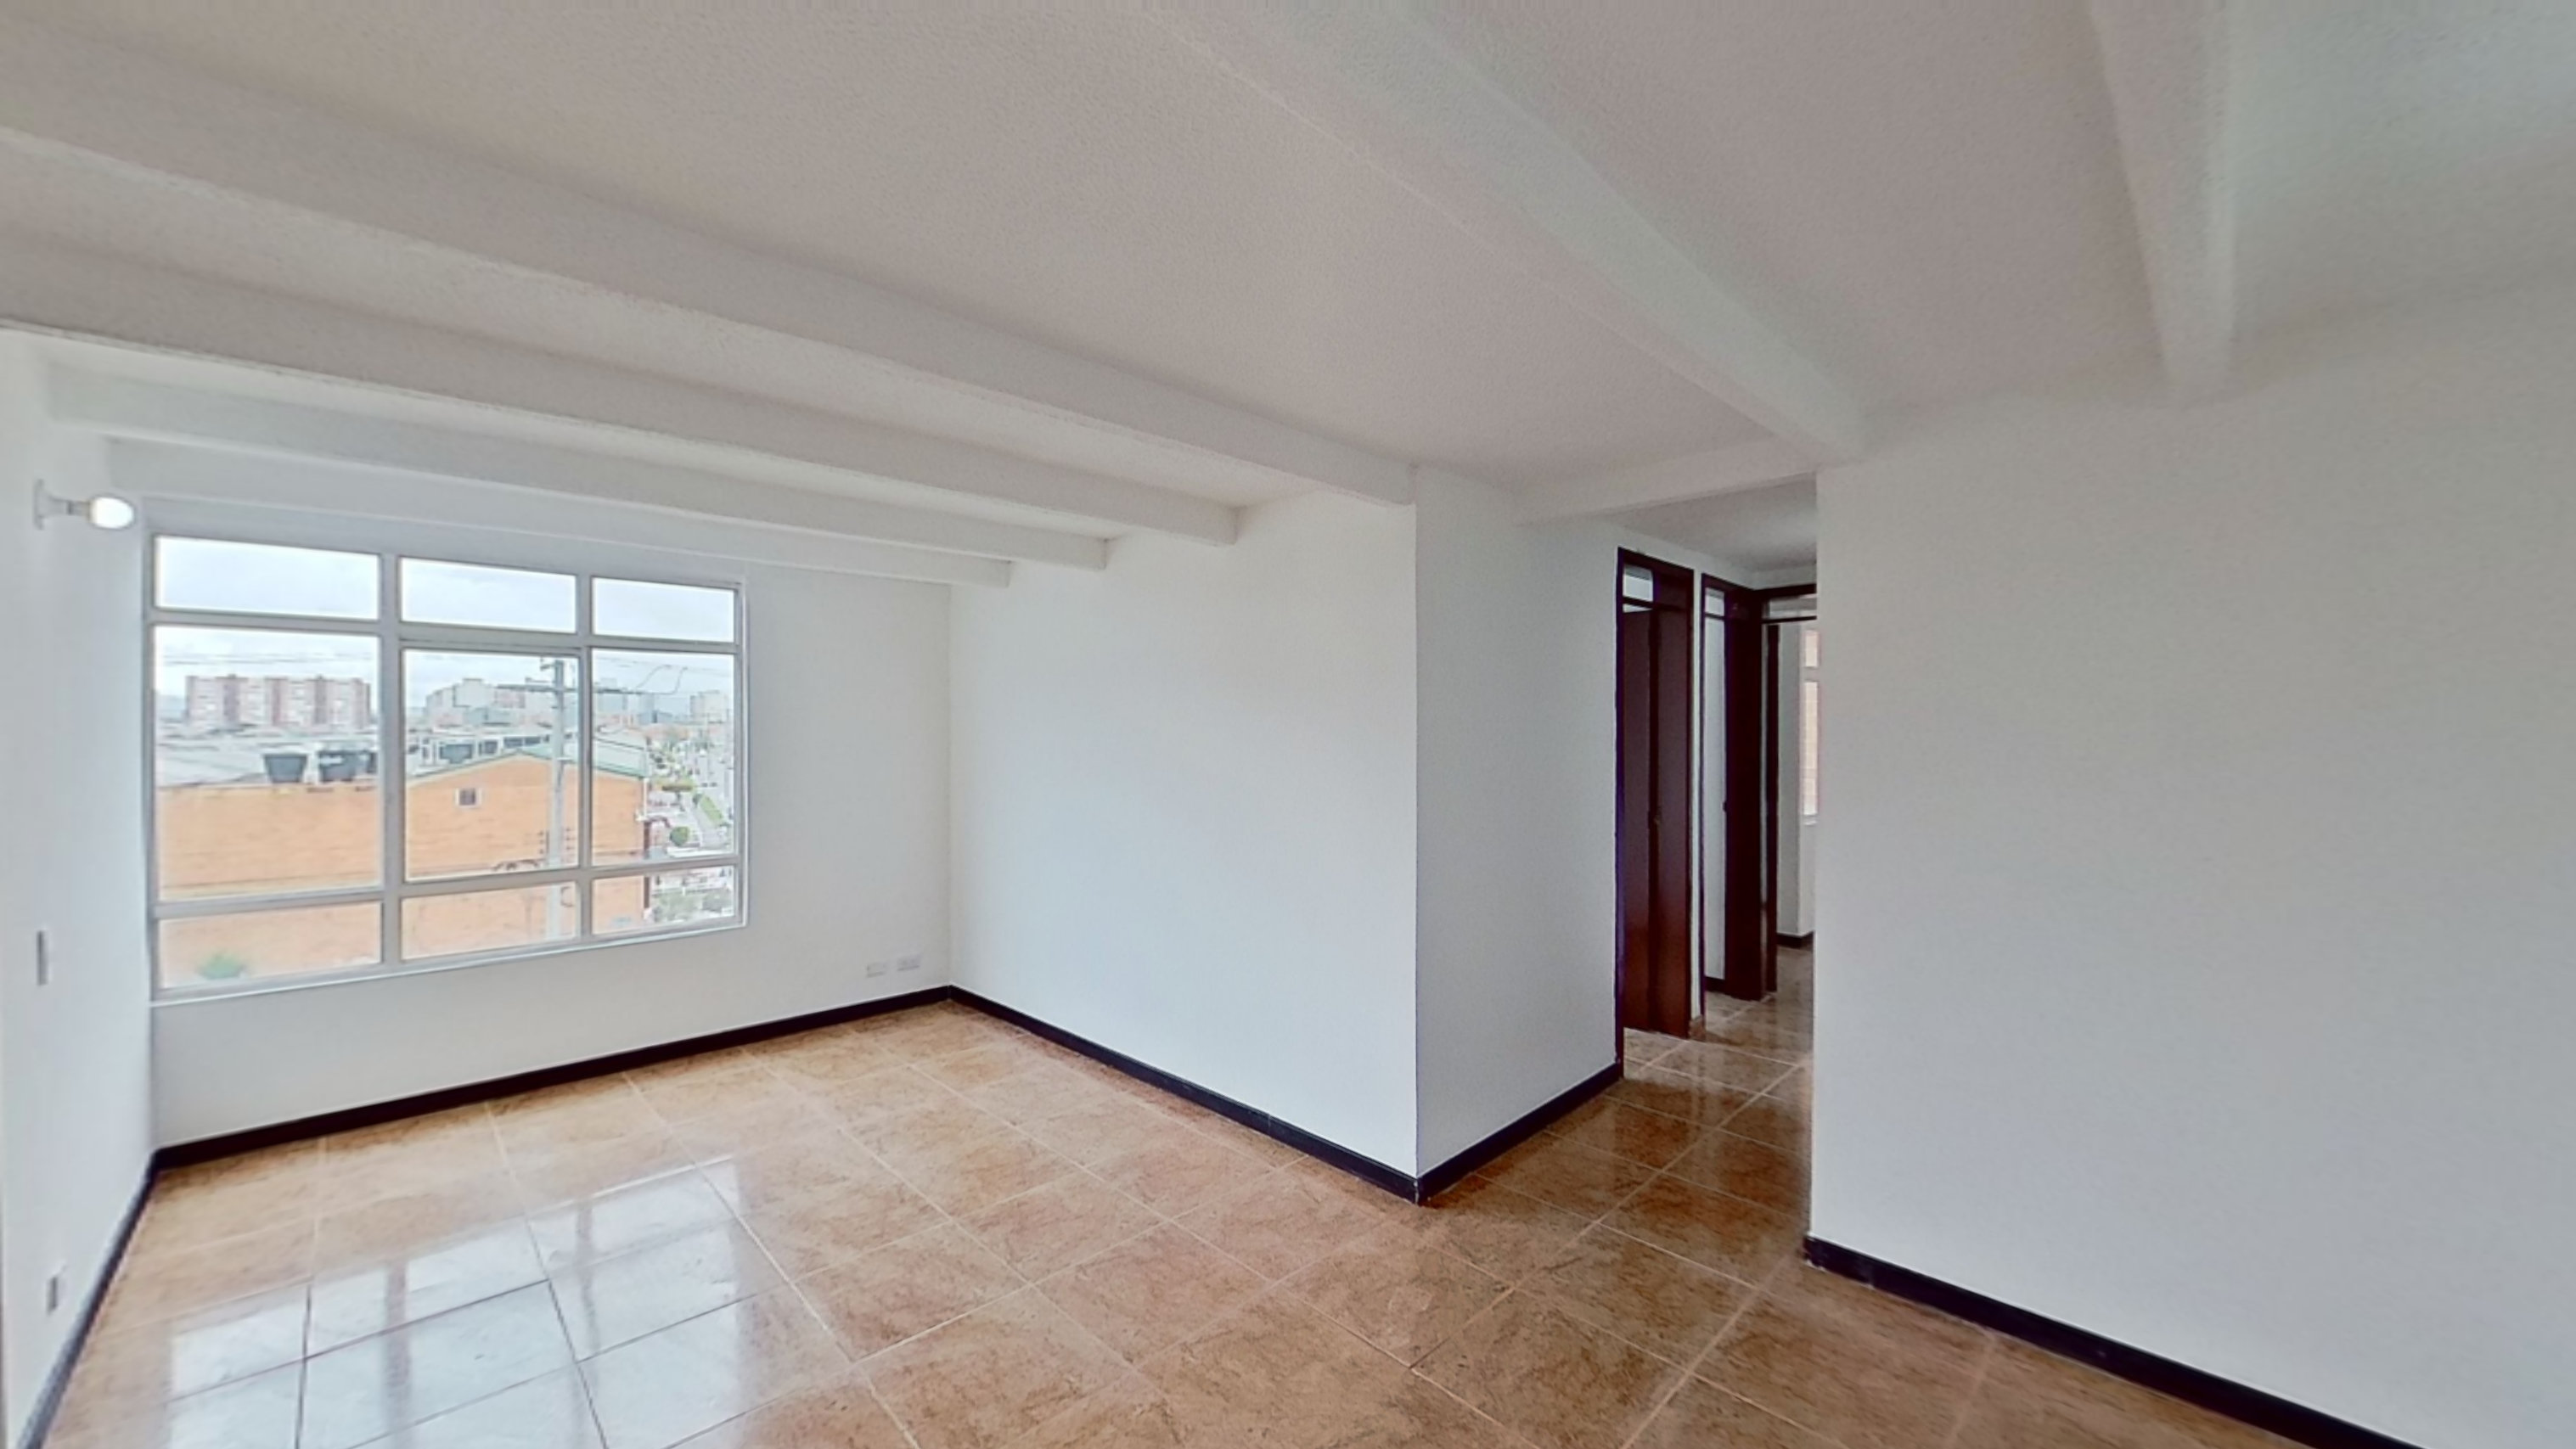 Venta de apartamento Bogotá Torres de Tintala 1